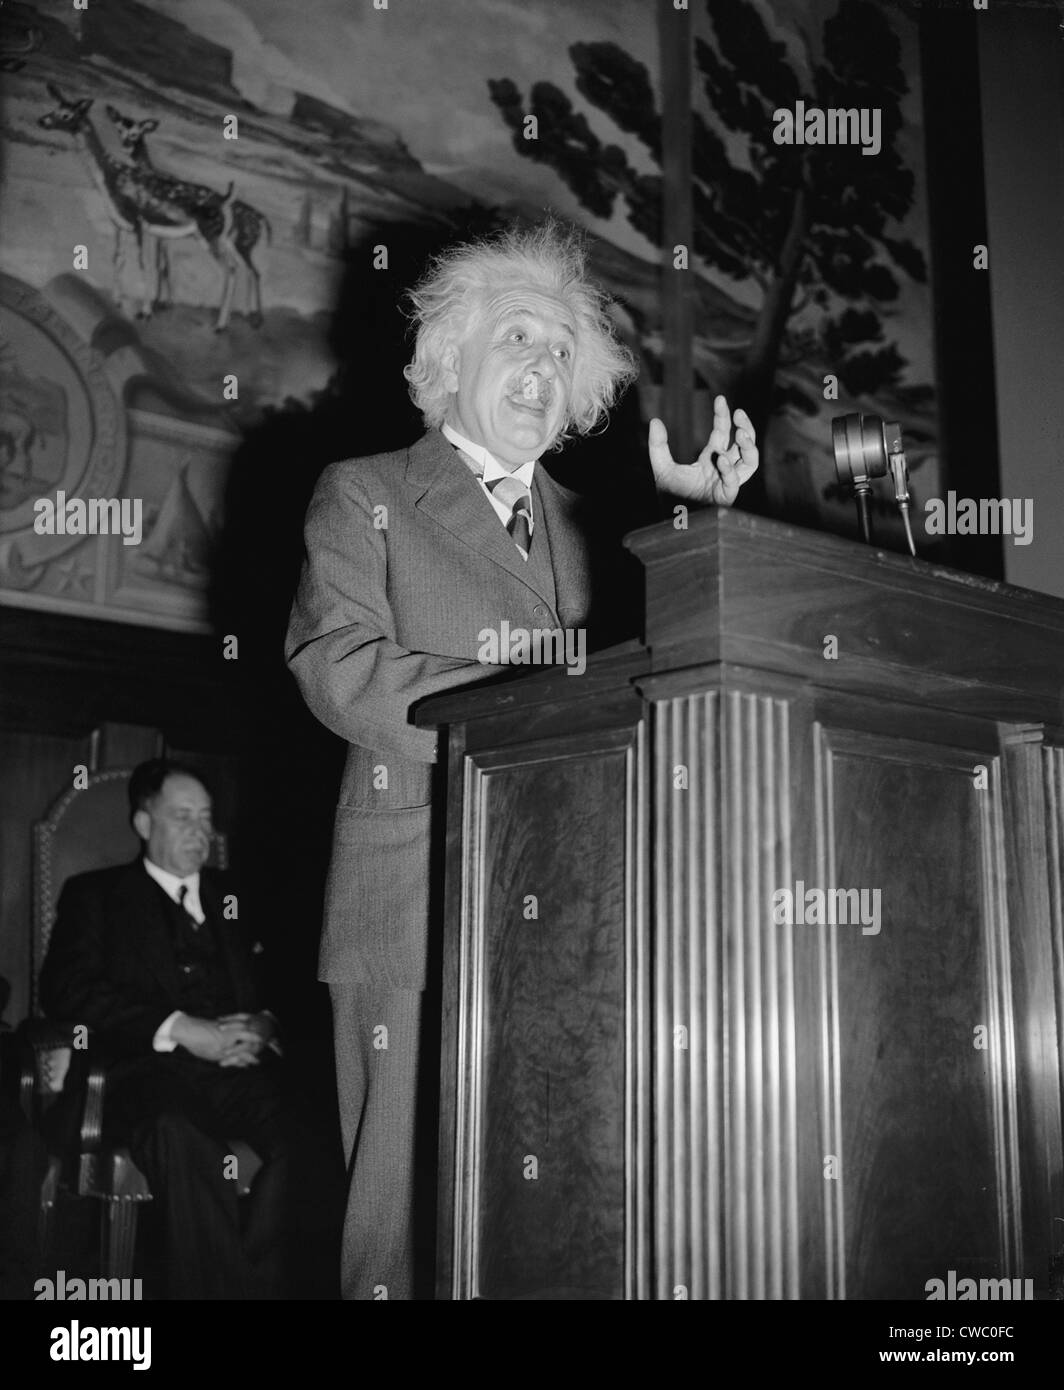 Albert Einstein (1879-1955), speaking in Washington, D.C. ca. 1940. Stock Photo